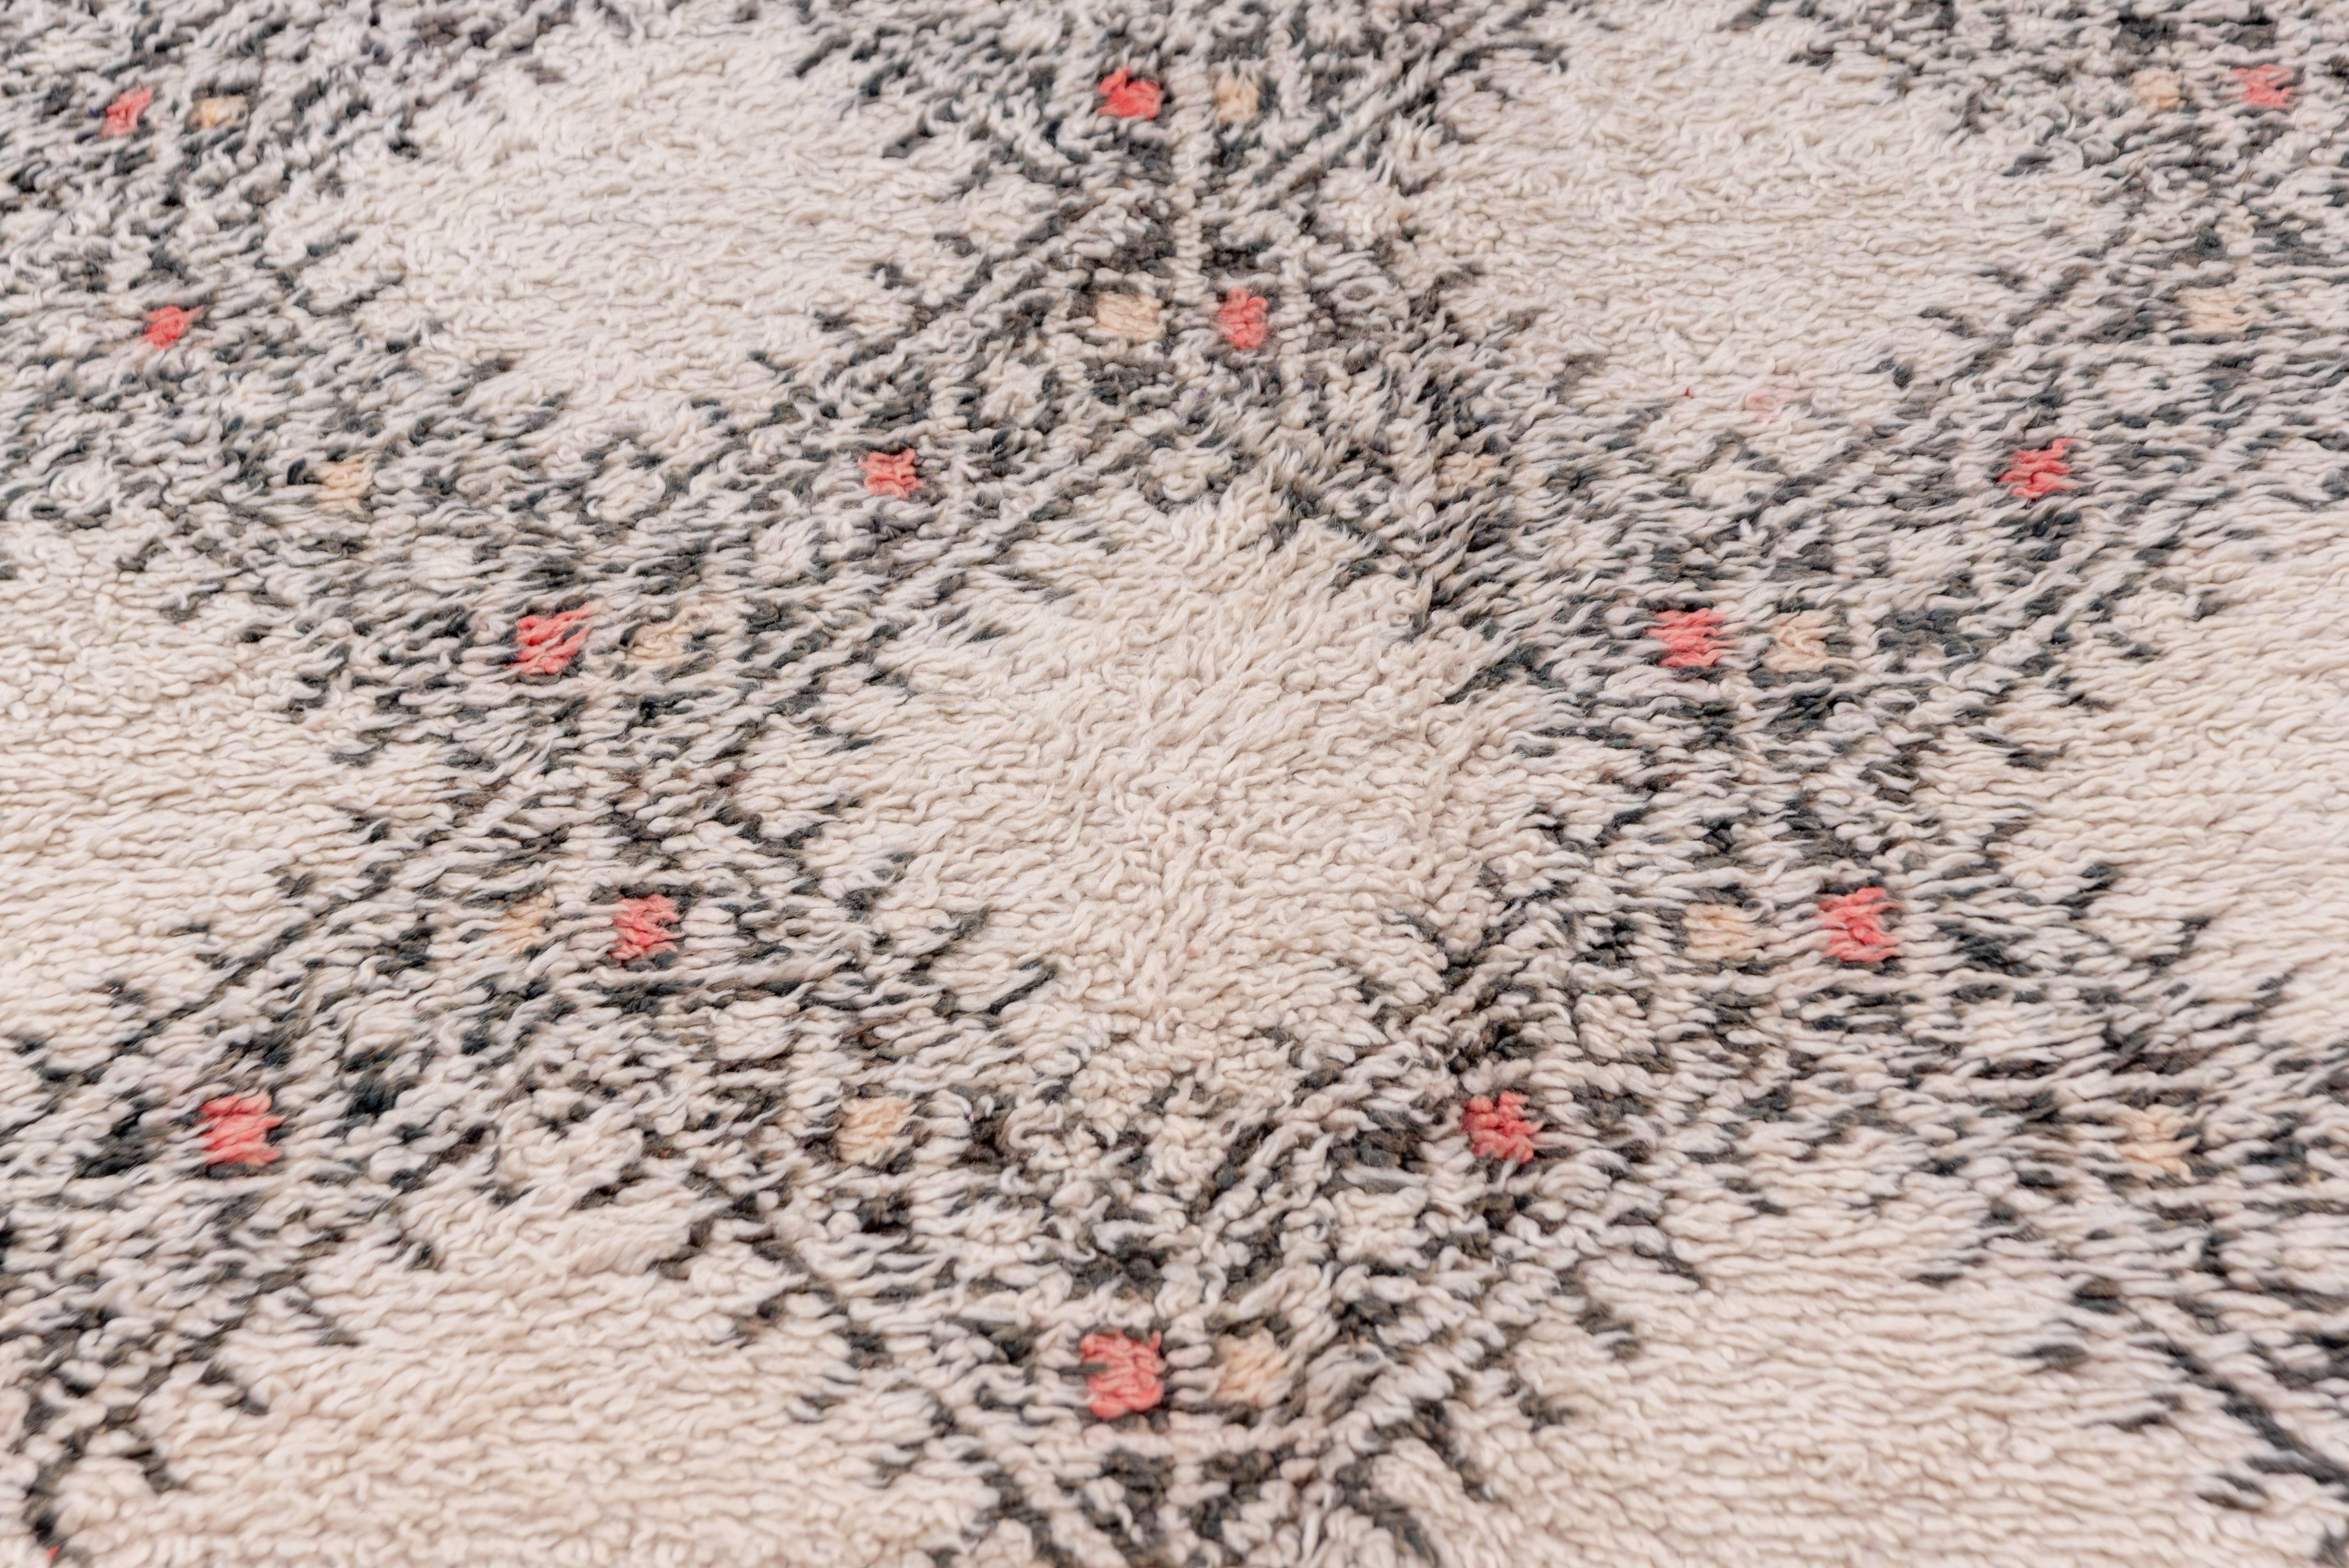 Dieser langflorige, zweifarbige Teppich wurde von einem Berberstamm im marokkanischen Atlasgebirge gewebt. Die braunen und elfenbeinfarbenen Tücher sind ungefärbt und stammen von den eigenen Schafen der Nomaden. Das rautenförmige, offene